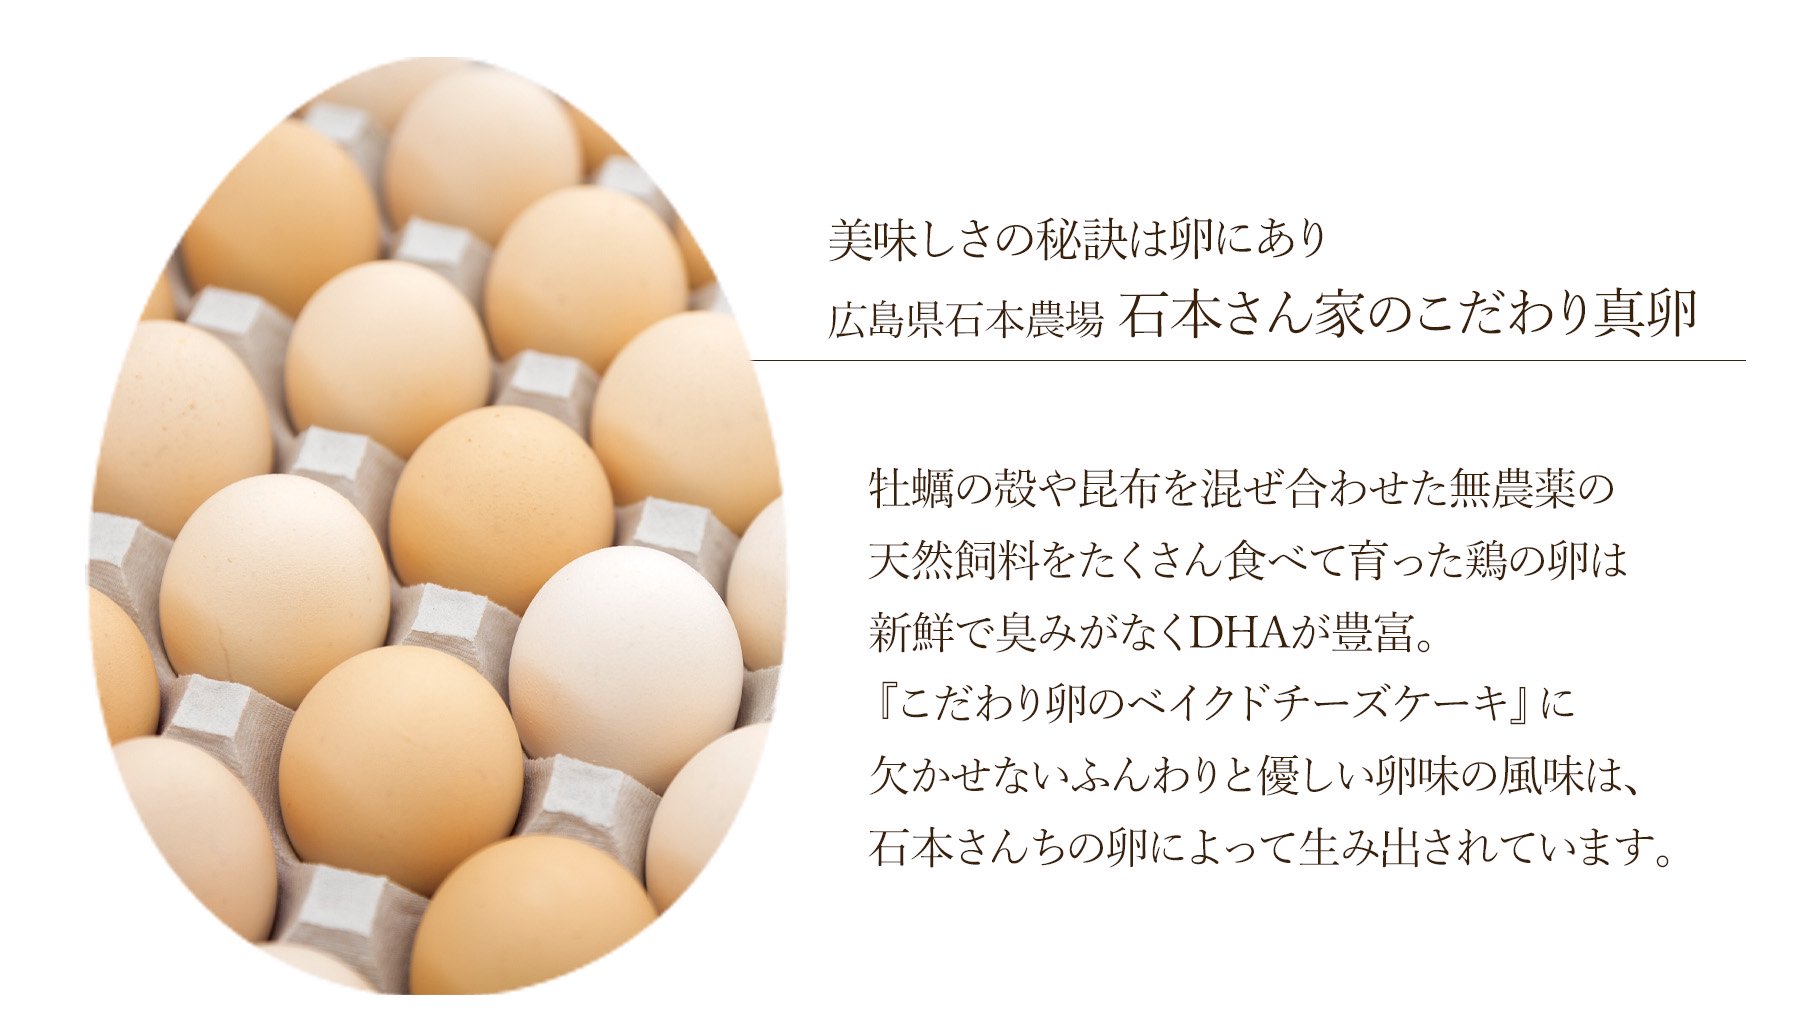 牡蠣の殻や昆布を混ぜ合わせた無農薬の天然飼料をたくさん食べて育った鶏の卵は新鮮で臭みがなくDHAが豊富。『こだわり卵のベイクドチーズケーキ』に欠かせないふんわりと優しい卵味の風味は、石本さんちの卵によって生み出されています。